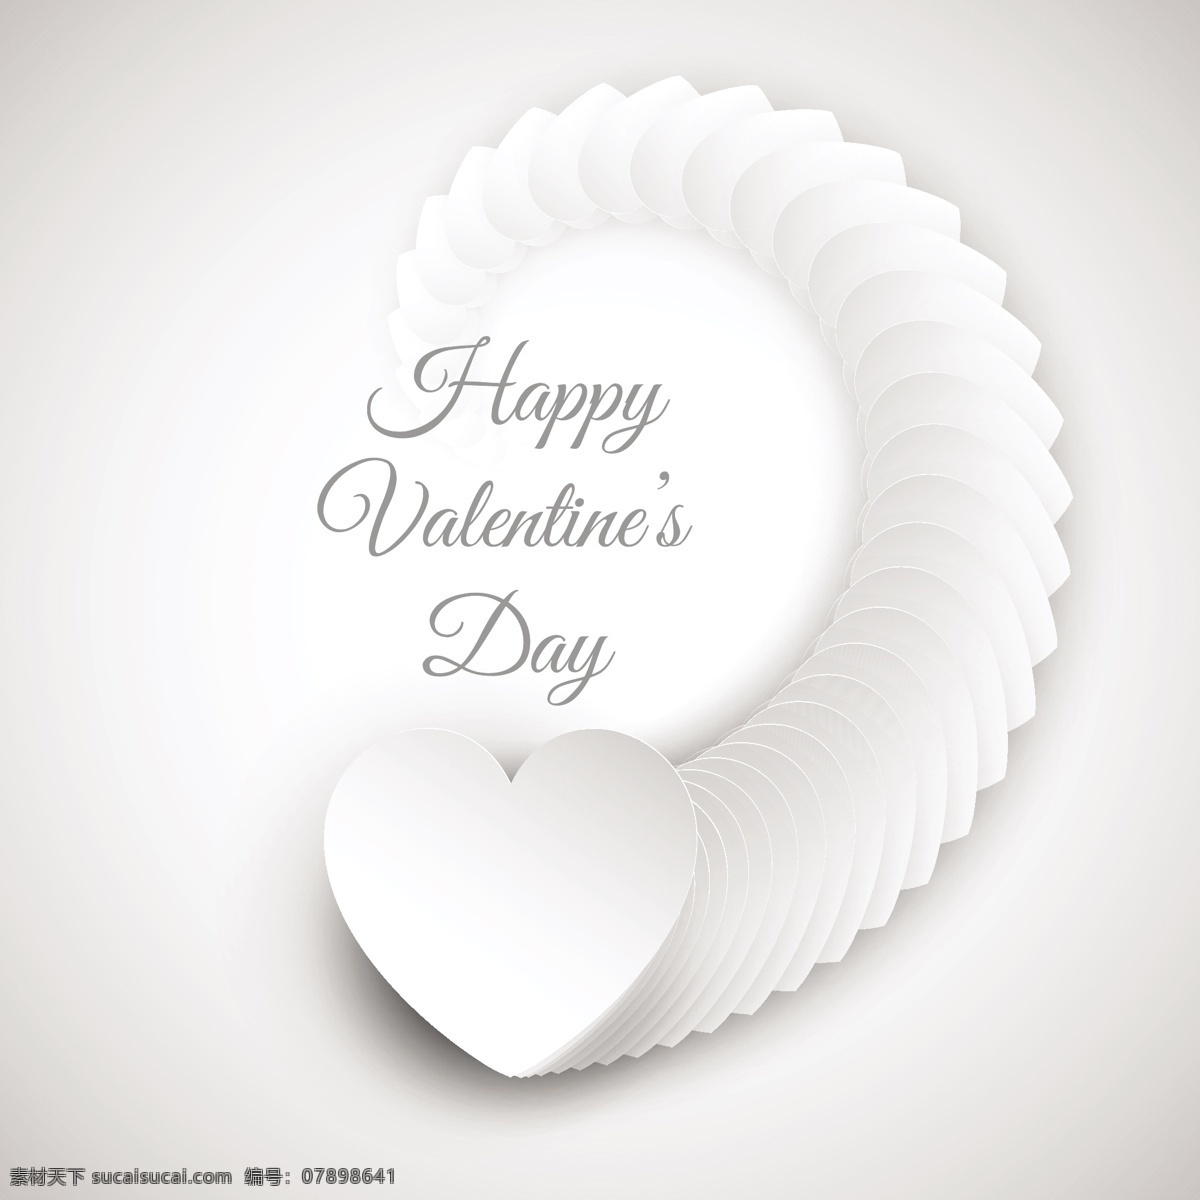 白色 背景 螺旋 形 情人节 心脏 卡片 爱情 庆祝 快乐 情侣 浪漫 美丽 节日 丘比特 问候 二月 年度